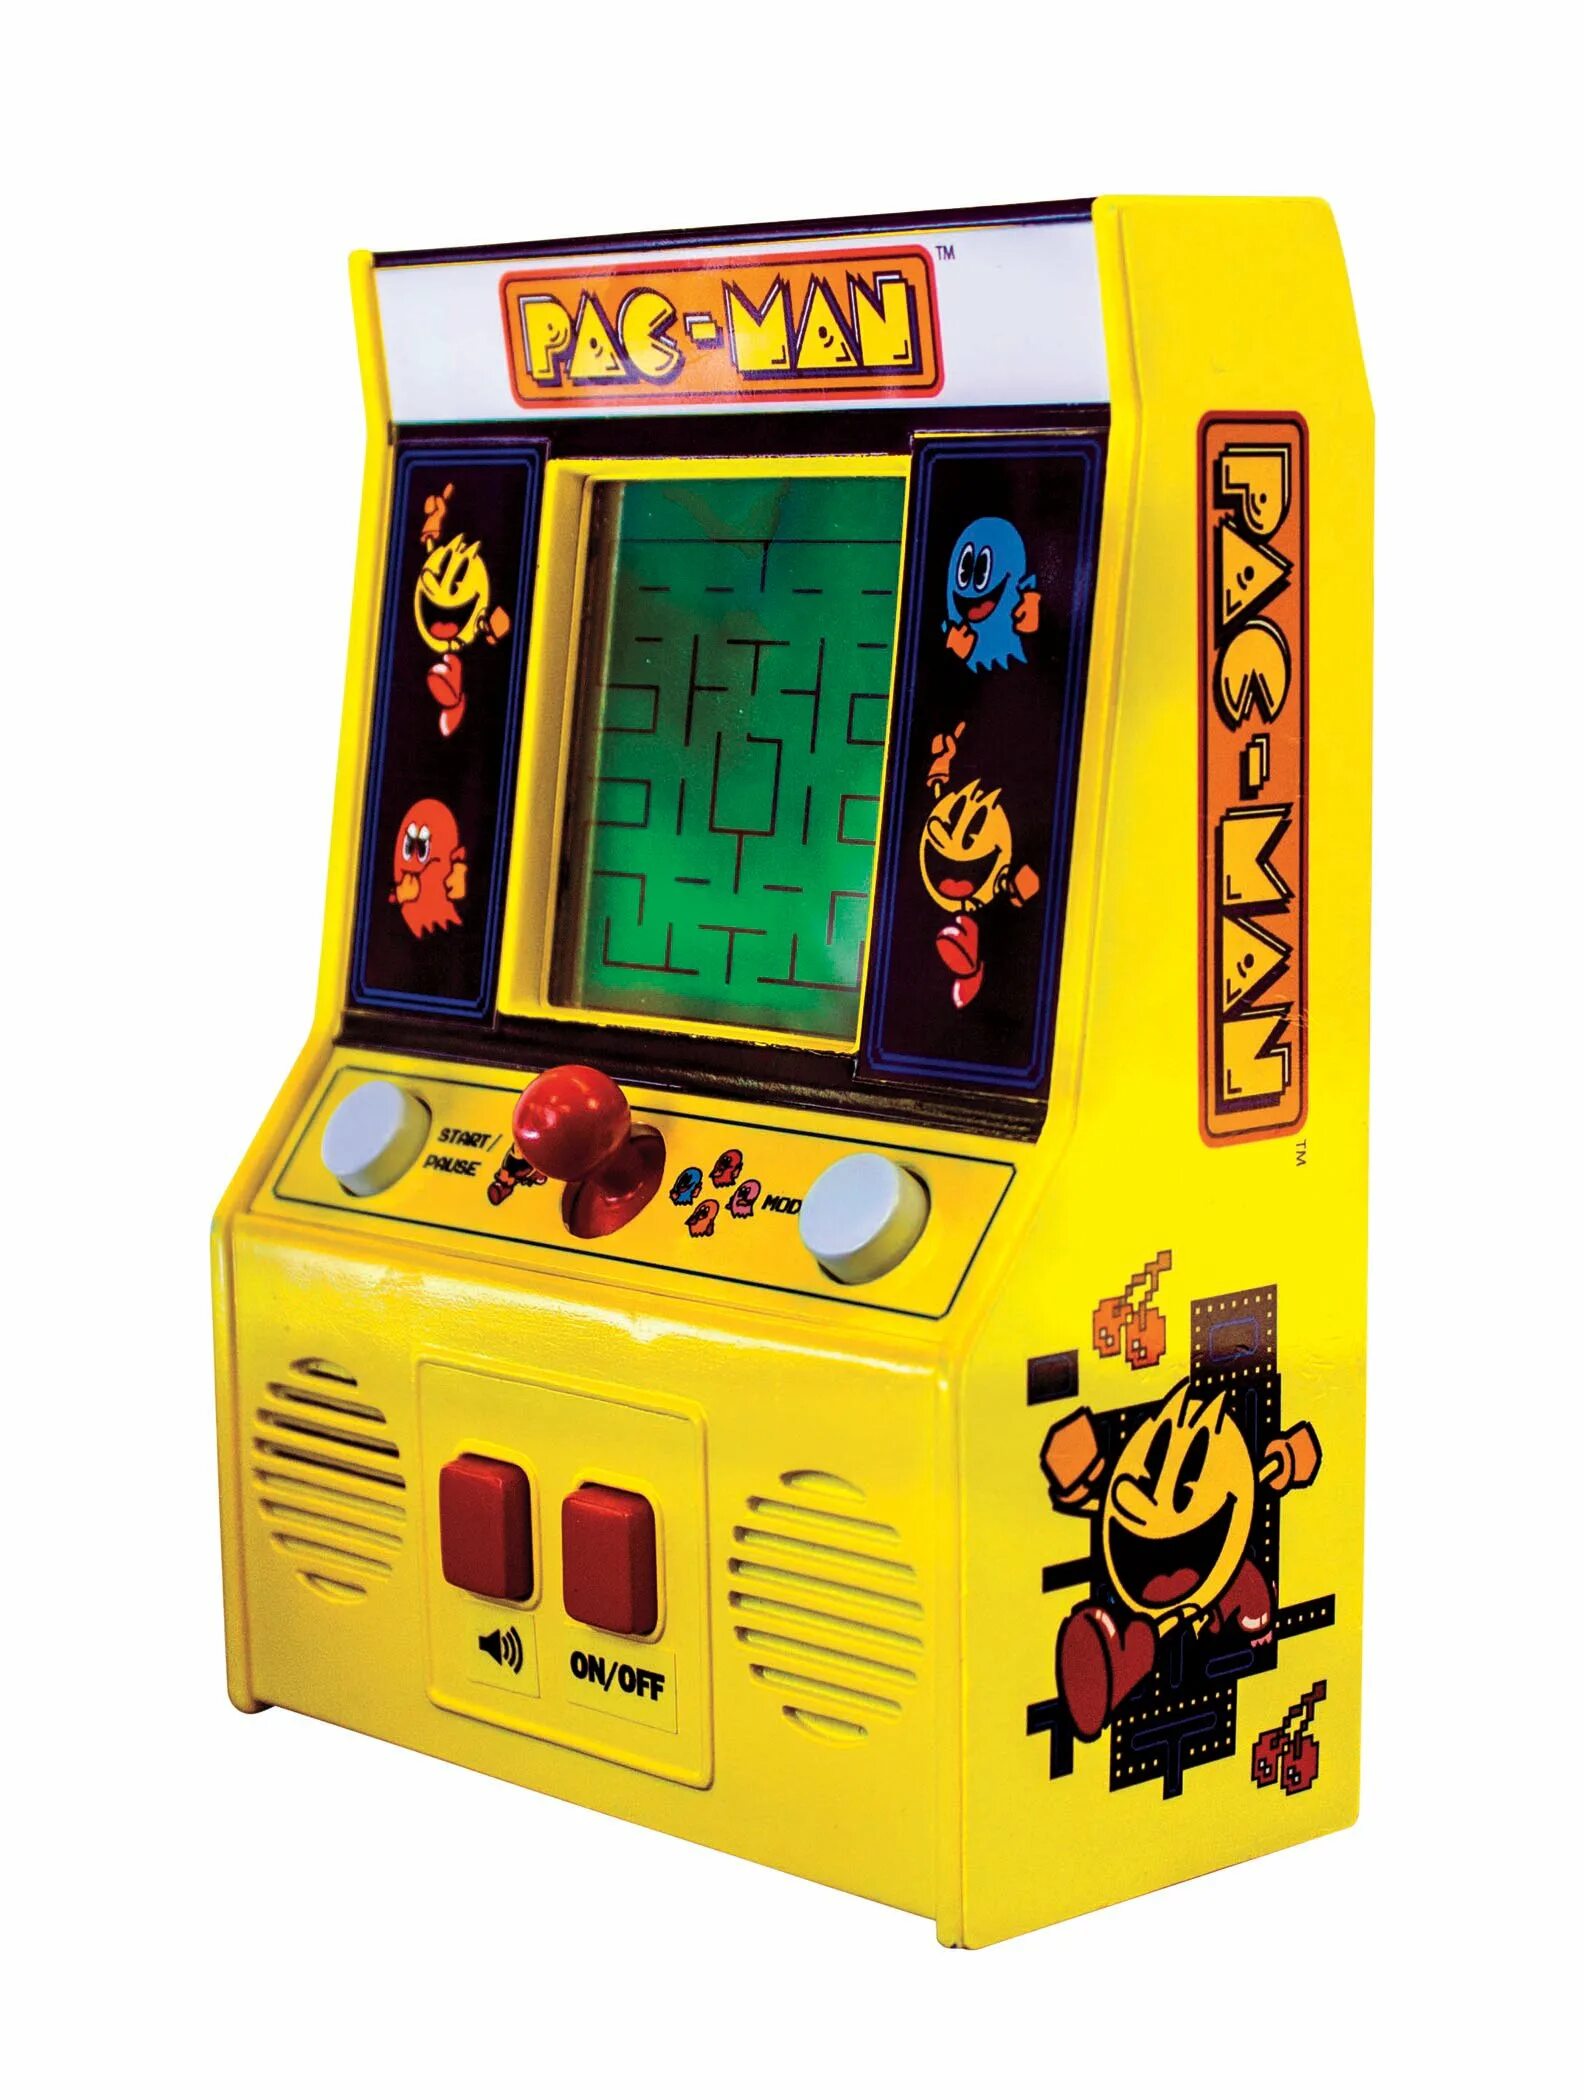 Мини аркадный автомат Пакмен. Игровой автомат Retro Arcade. Pac-man Arcade игровой автомат. Мини аркадный автомат Retro Arcade. Купить игровой автомат с игрушками